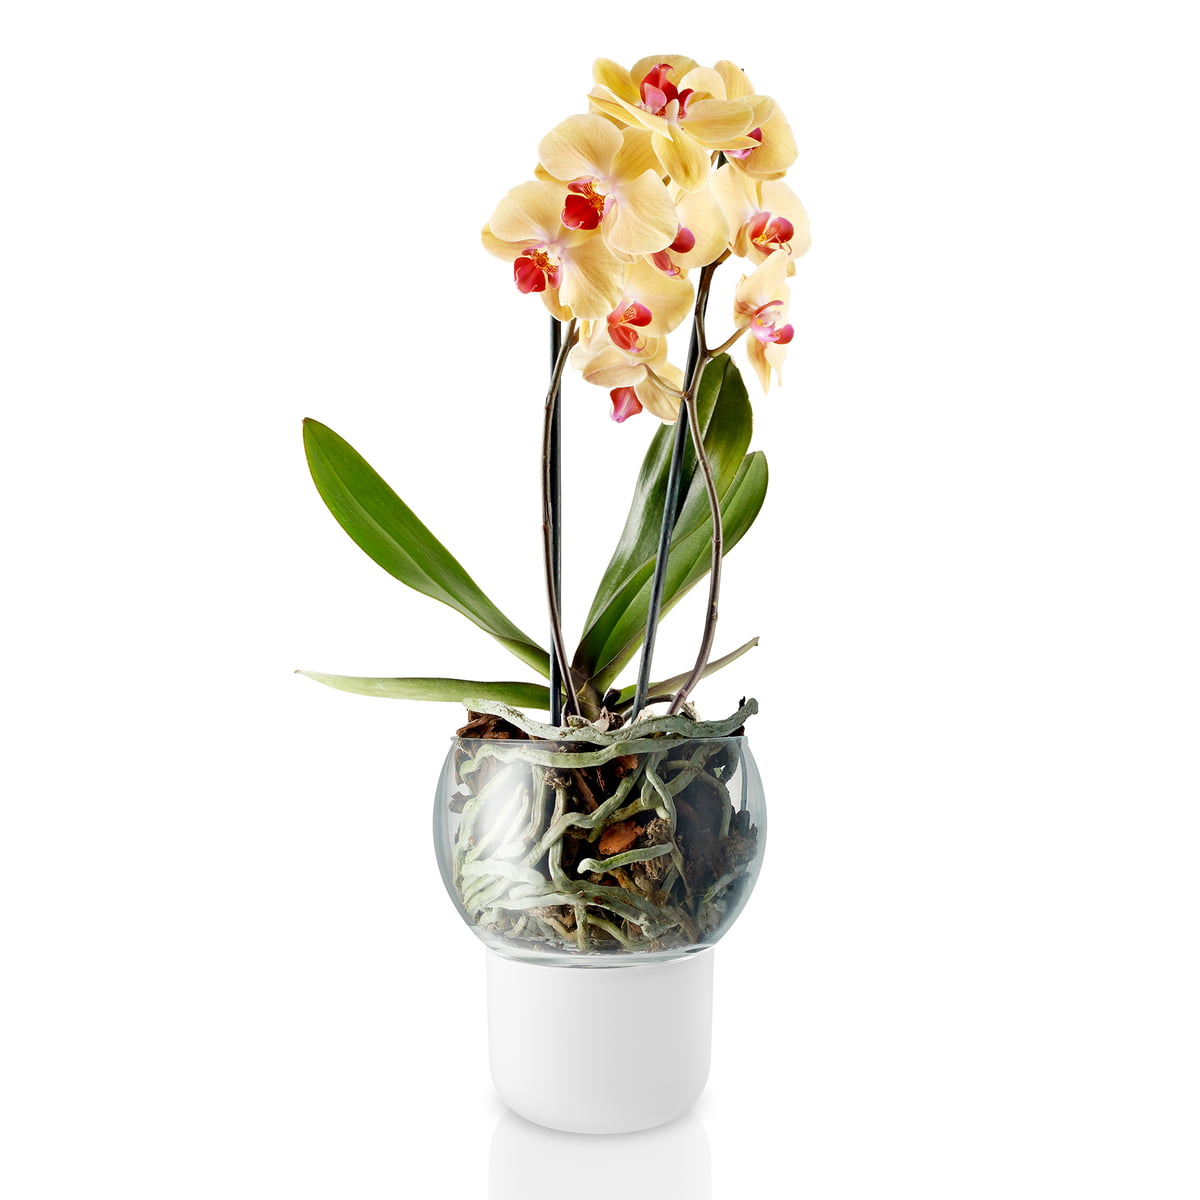 Орхидея в горшке купить в интернет. Горшок Орхидея 15х17. Горшок Eva solo для орхидеи с автополивом. Кашпо стеклянный орхид белый.